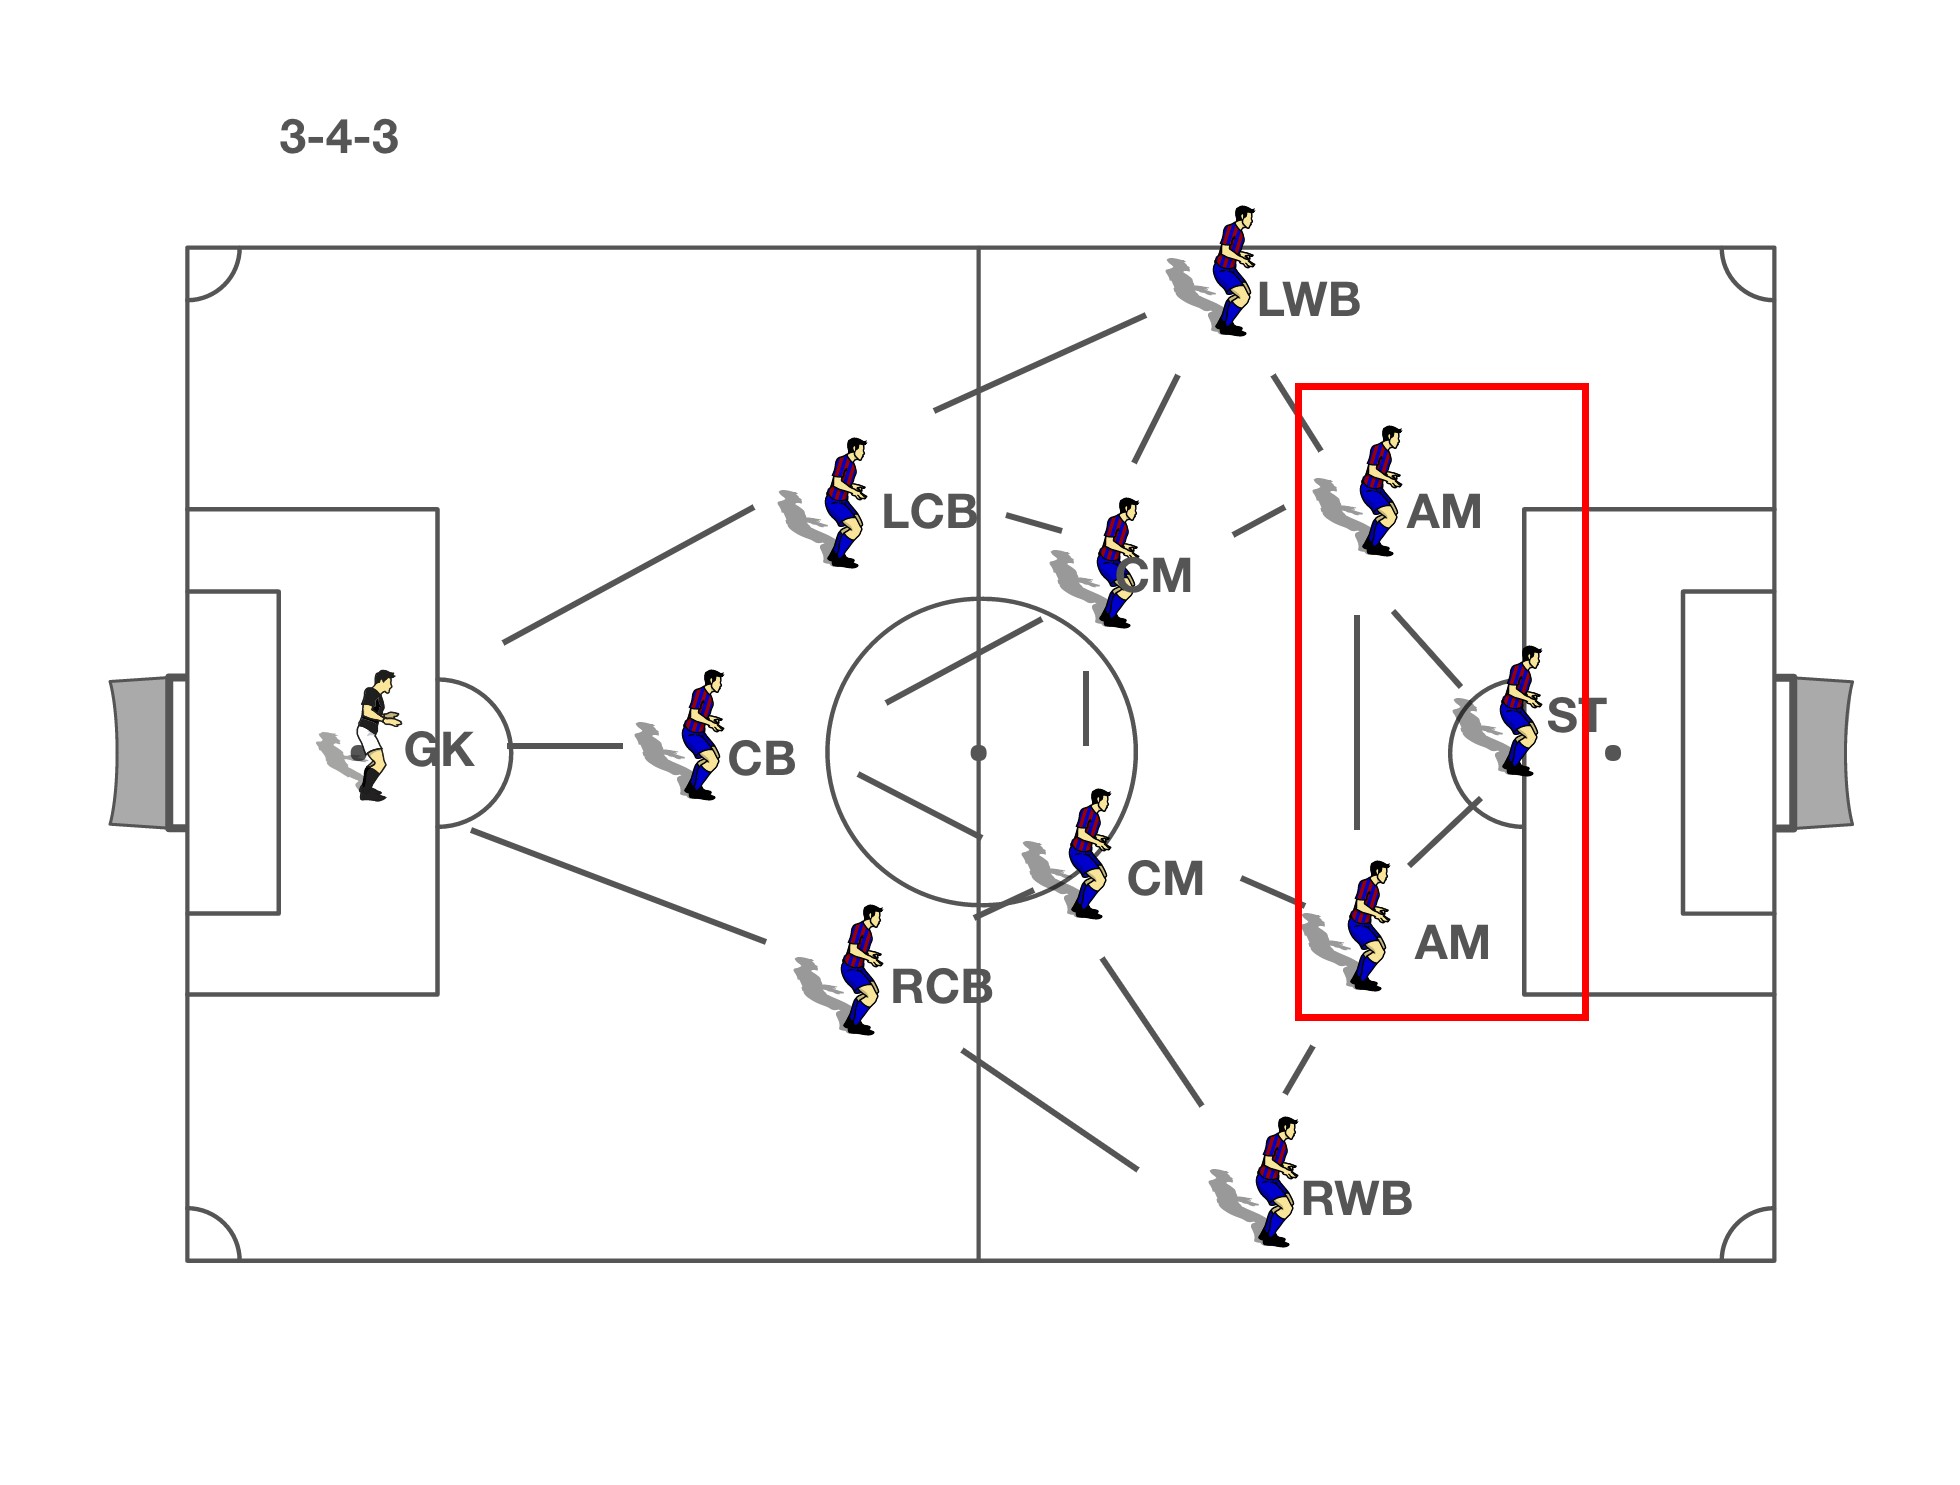 足球战术之3-4-3阵型打法解析